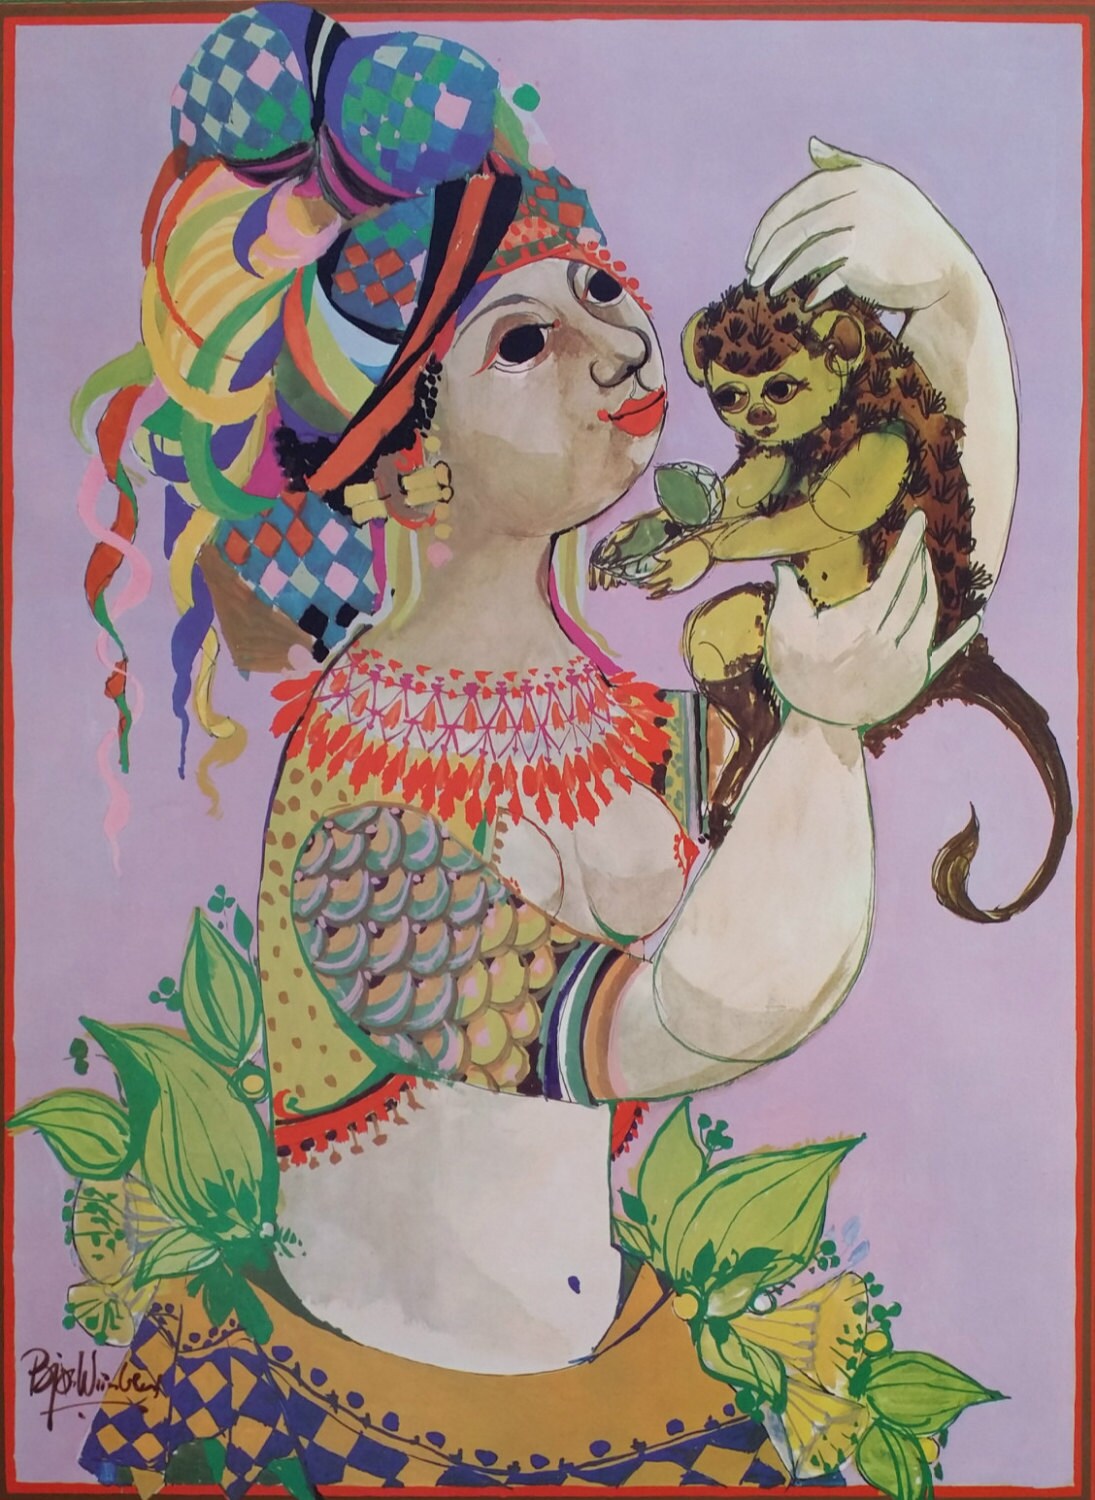 1970 "Lady of the South" by Bjørn Wiinblad - Original Vintage Poster